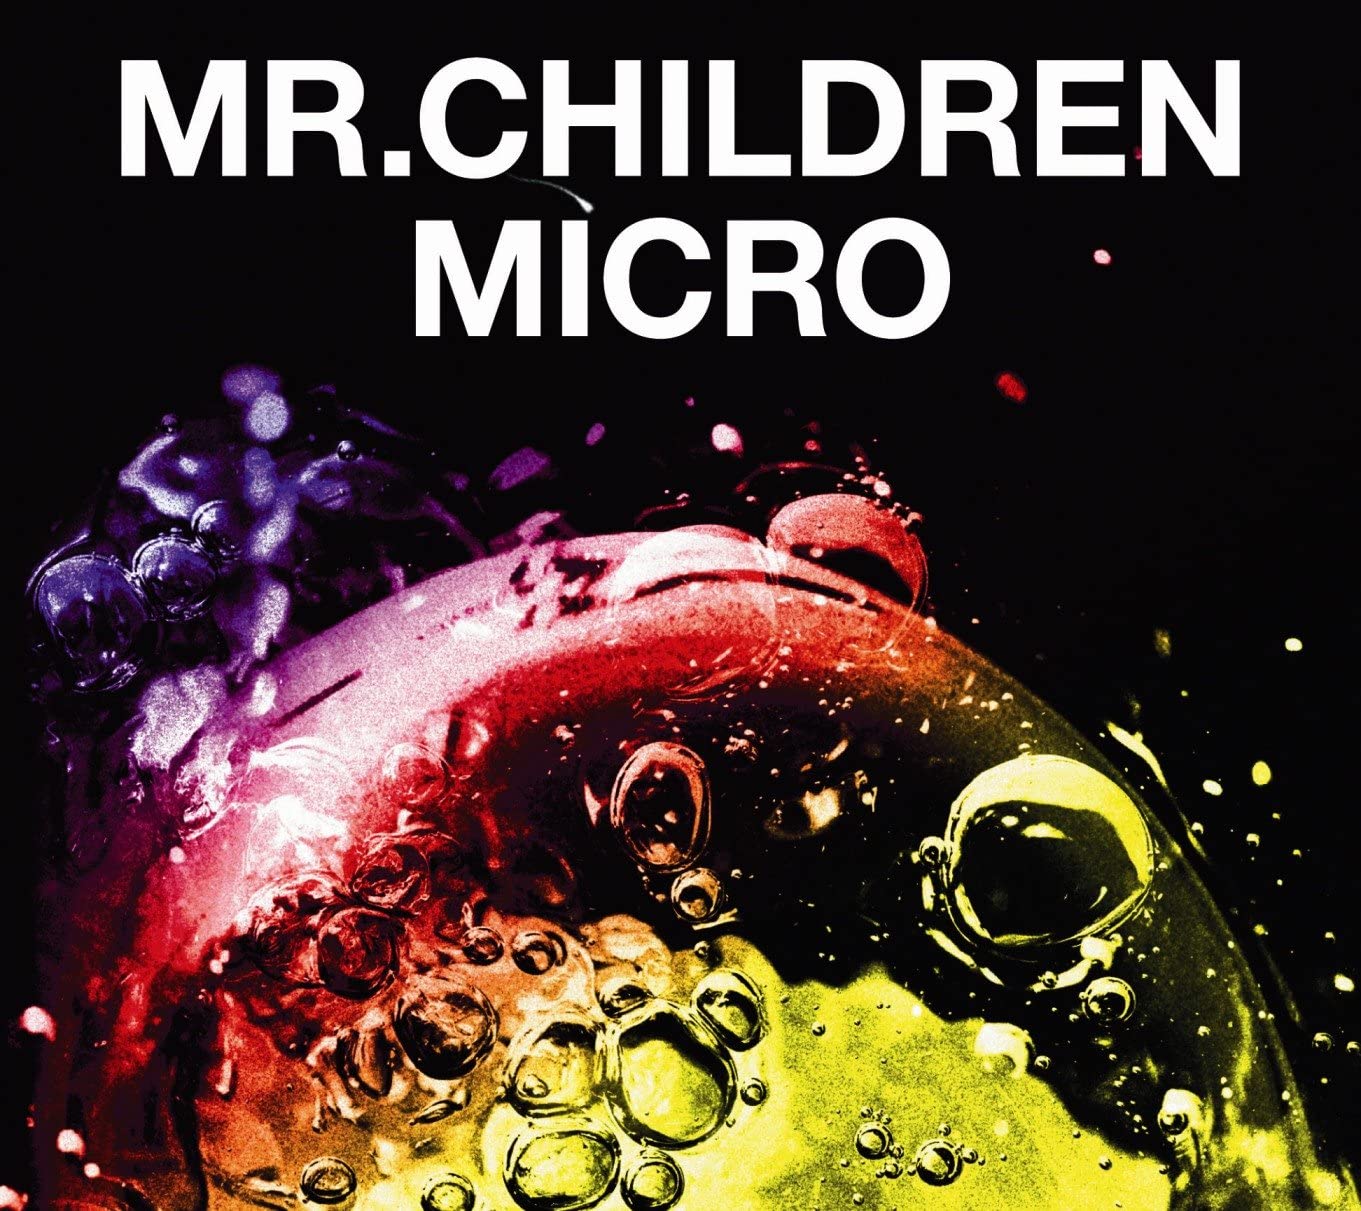 新品 訳あり Mr.Children Mr.Children 2001-2005 micro 通常盤 CD 背表紙に色あせ有り